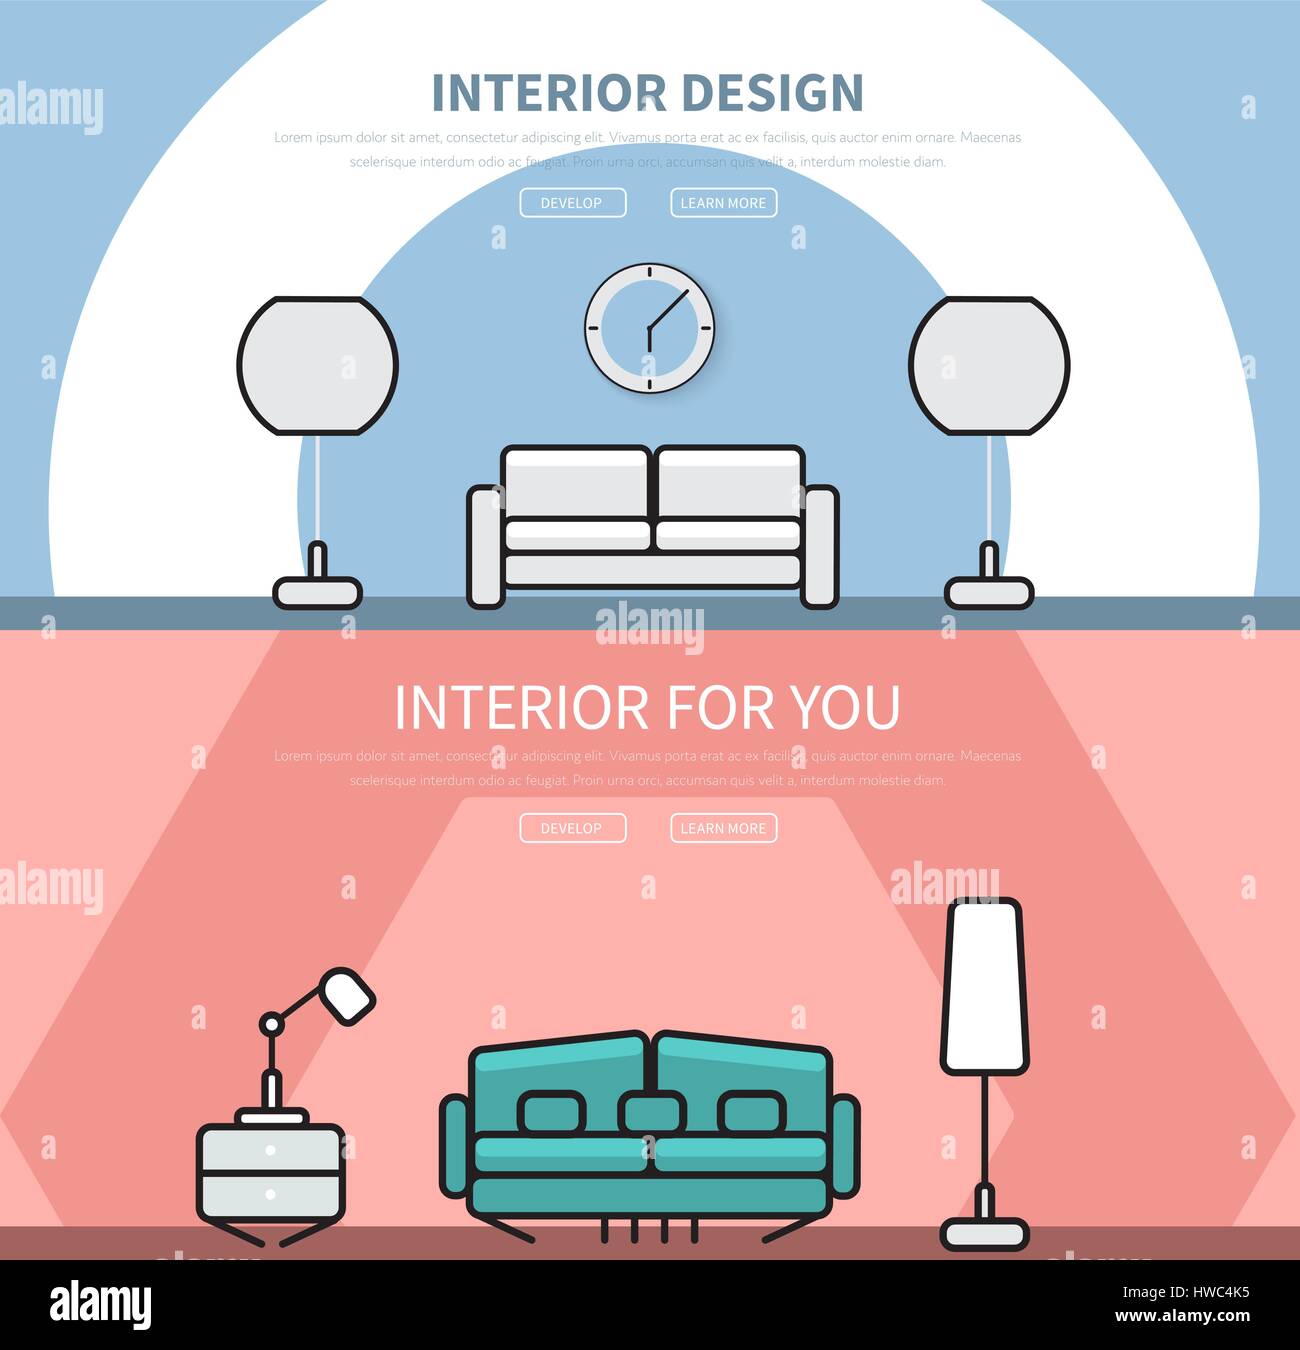 I modelli di sito web testata, con interni dal design in stile appartamento, rosso e blu, con un divano, Lapp e ore. Banner con il testo e i pulsanti. Vettore i Illustrazione Vettoriale